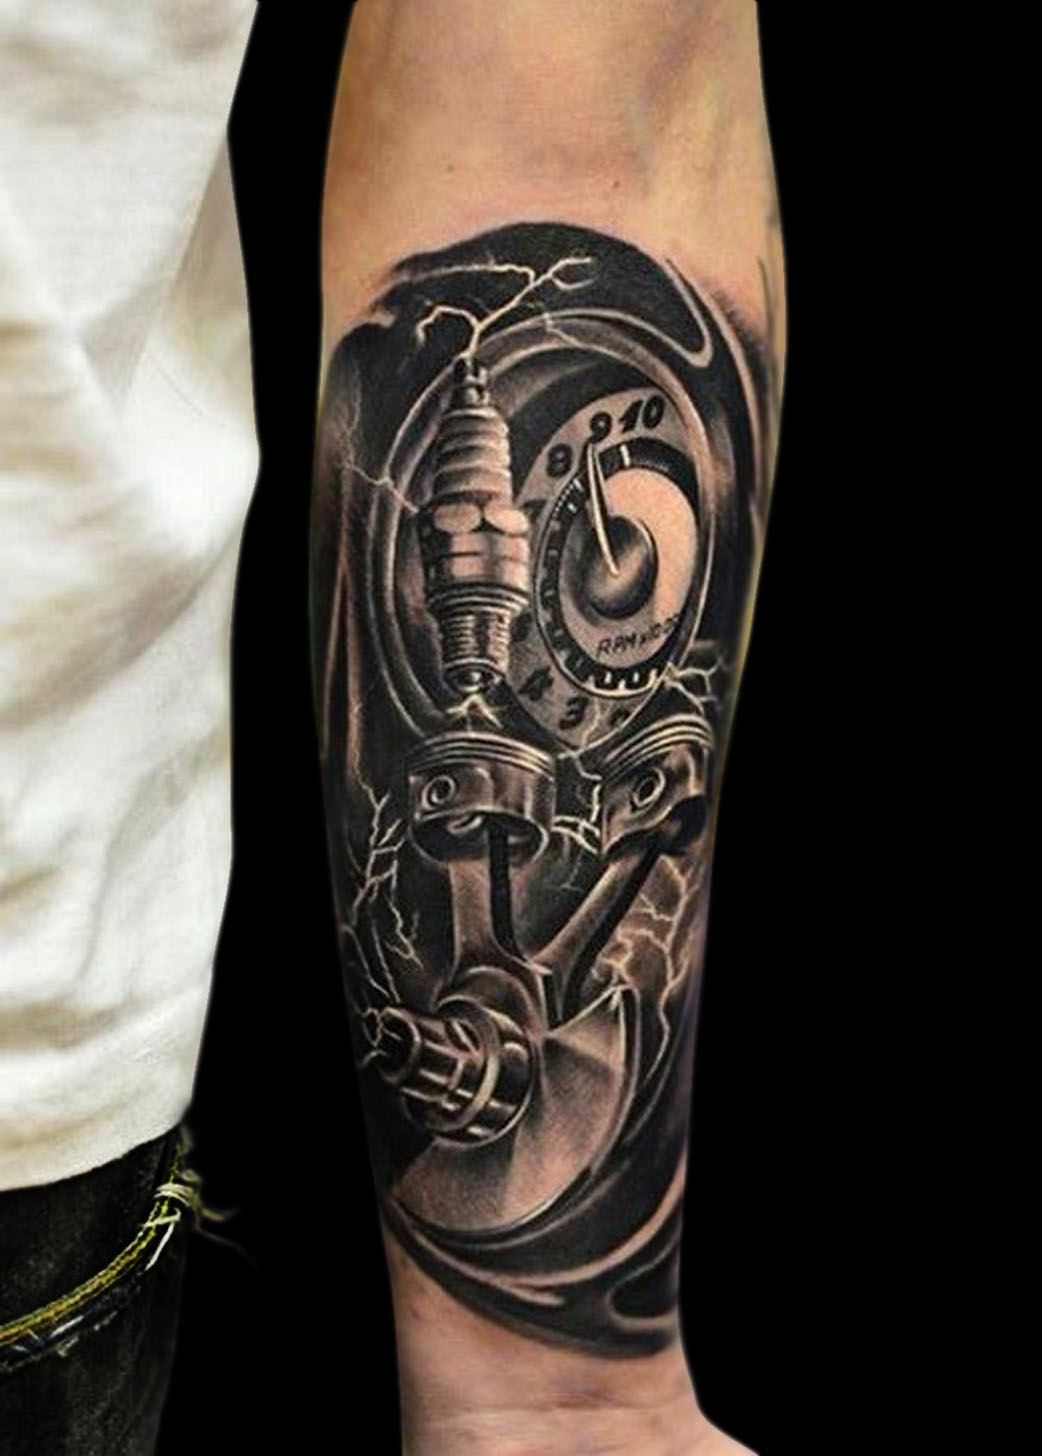 Tatuagem realista preta de partes da motocicleta feita no braço